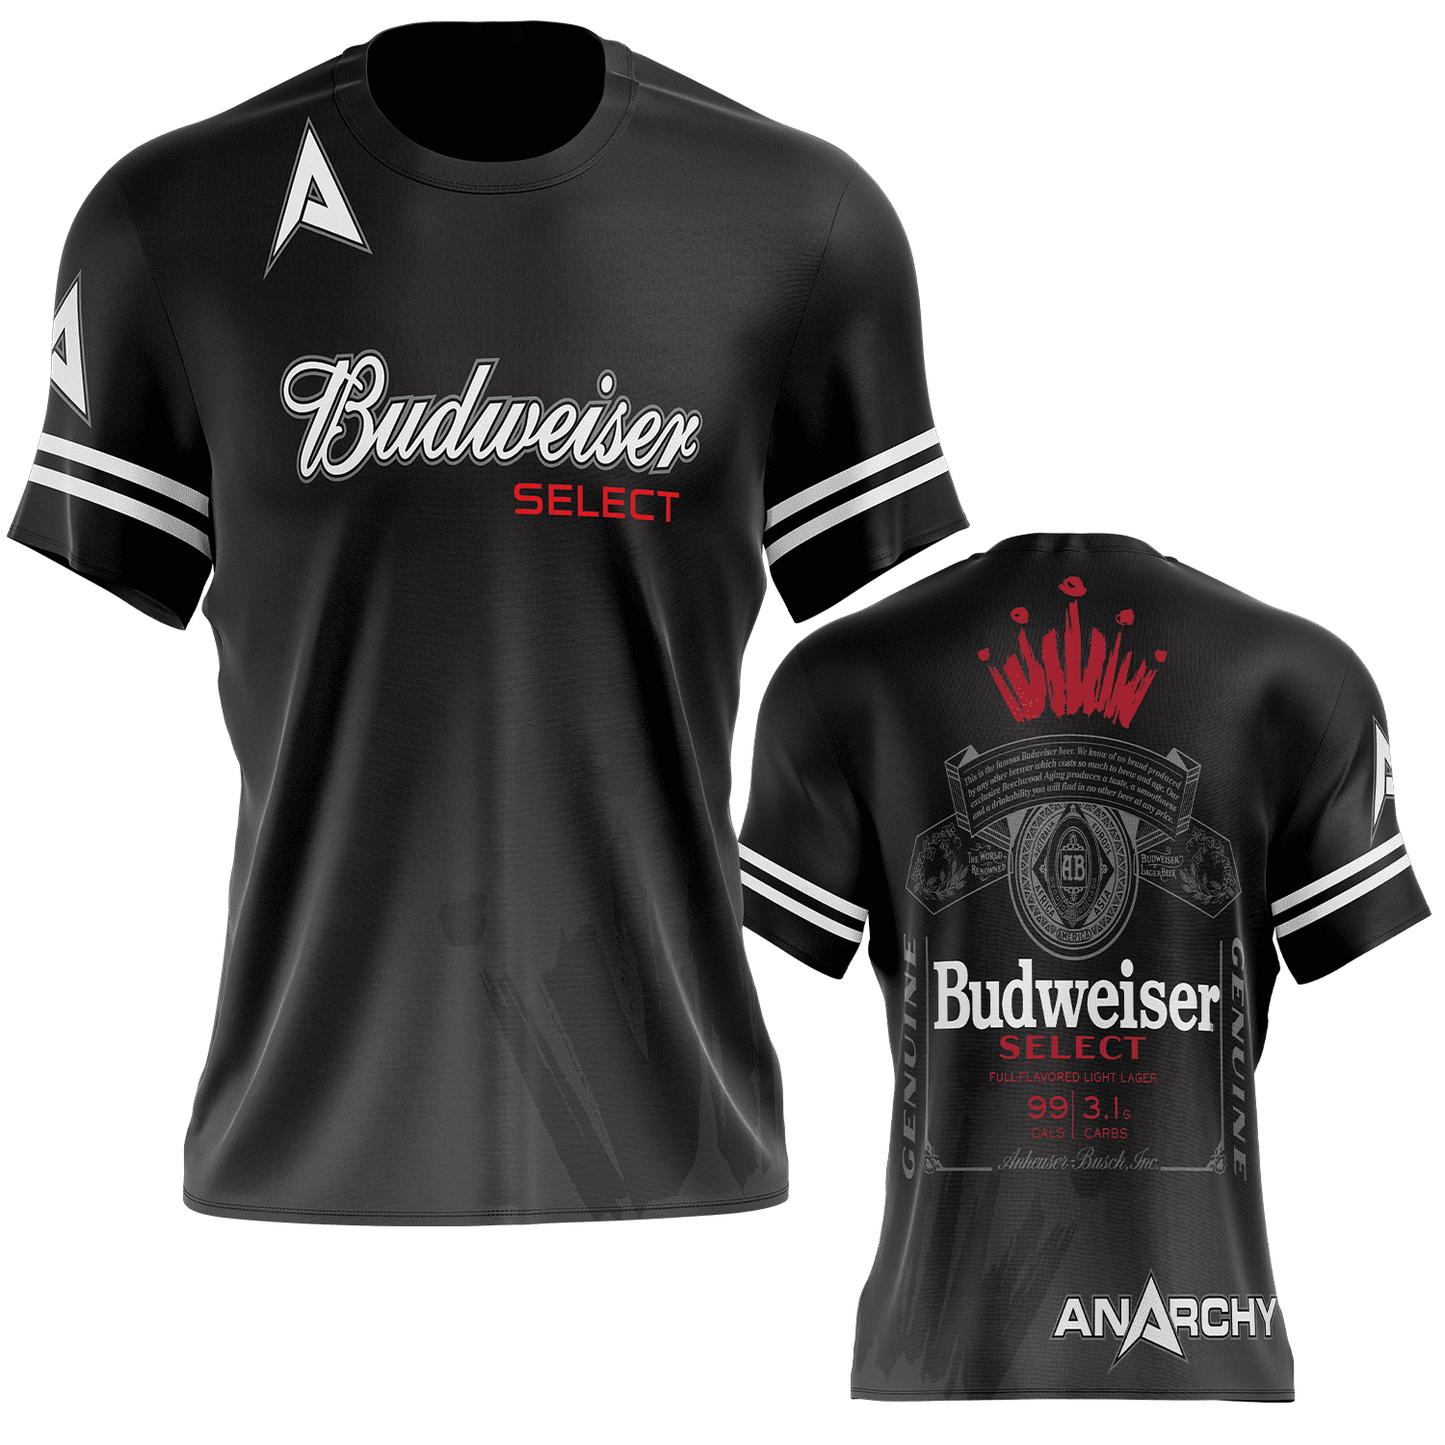 Anarchy Budweiser Select Short Sleeve Shirt